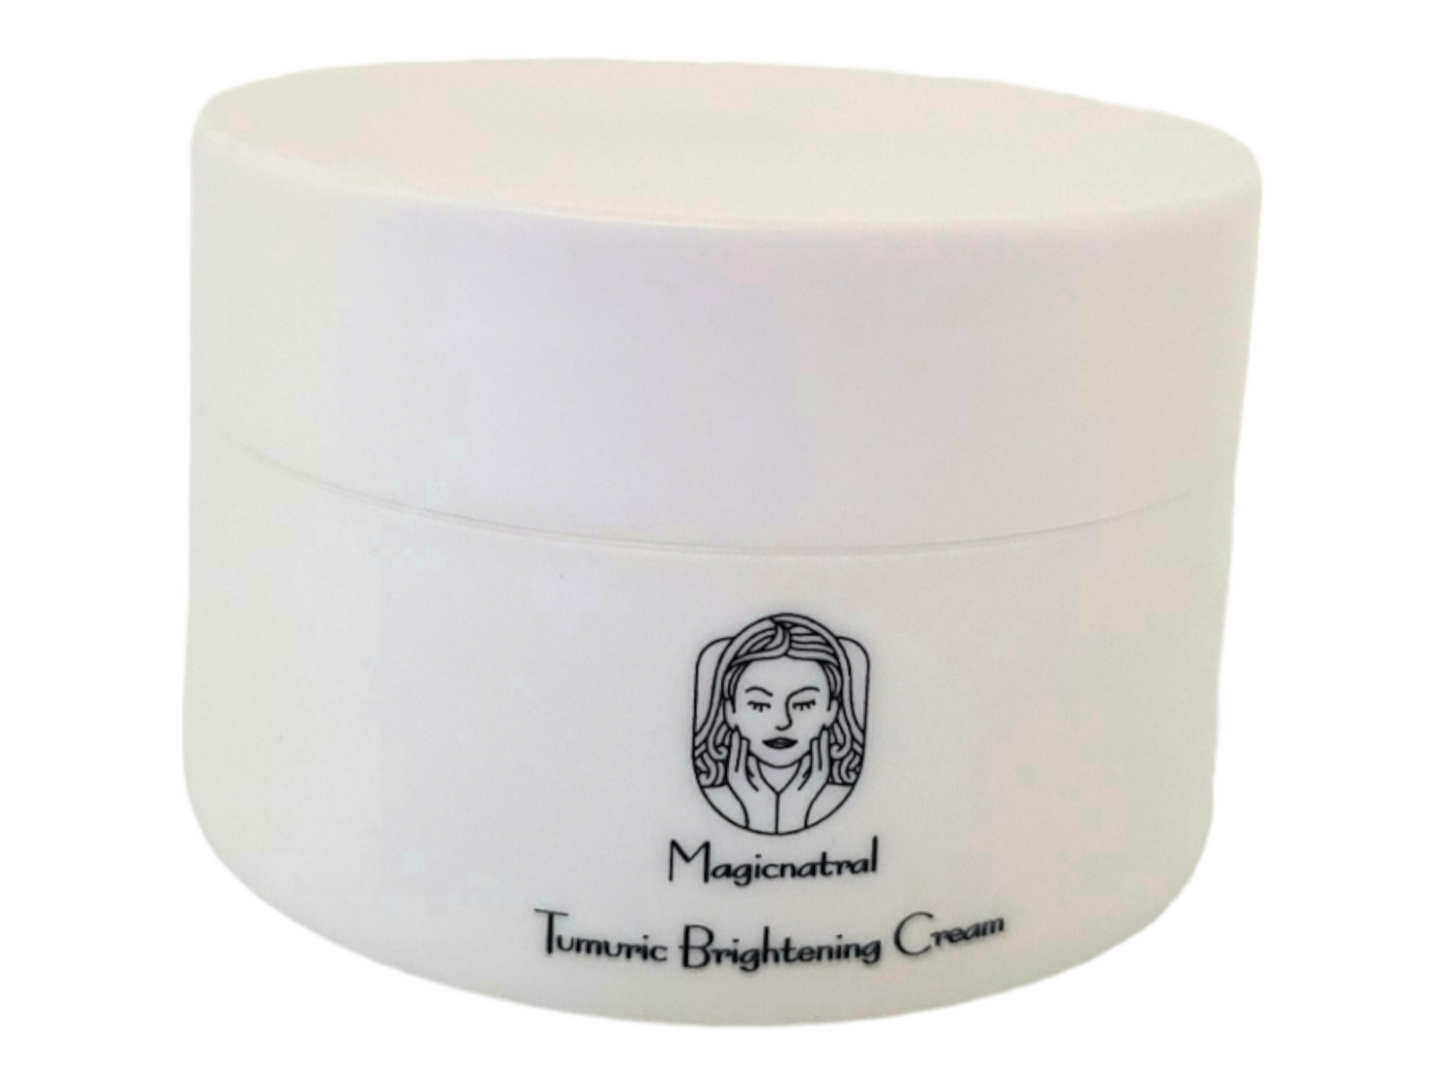 Tumeric brightening cream(50g)